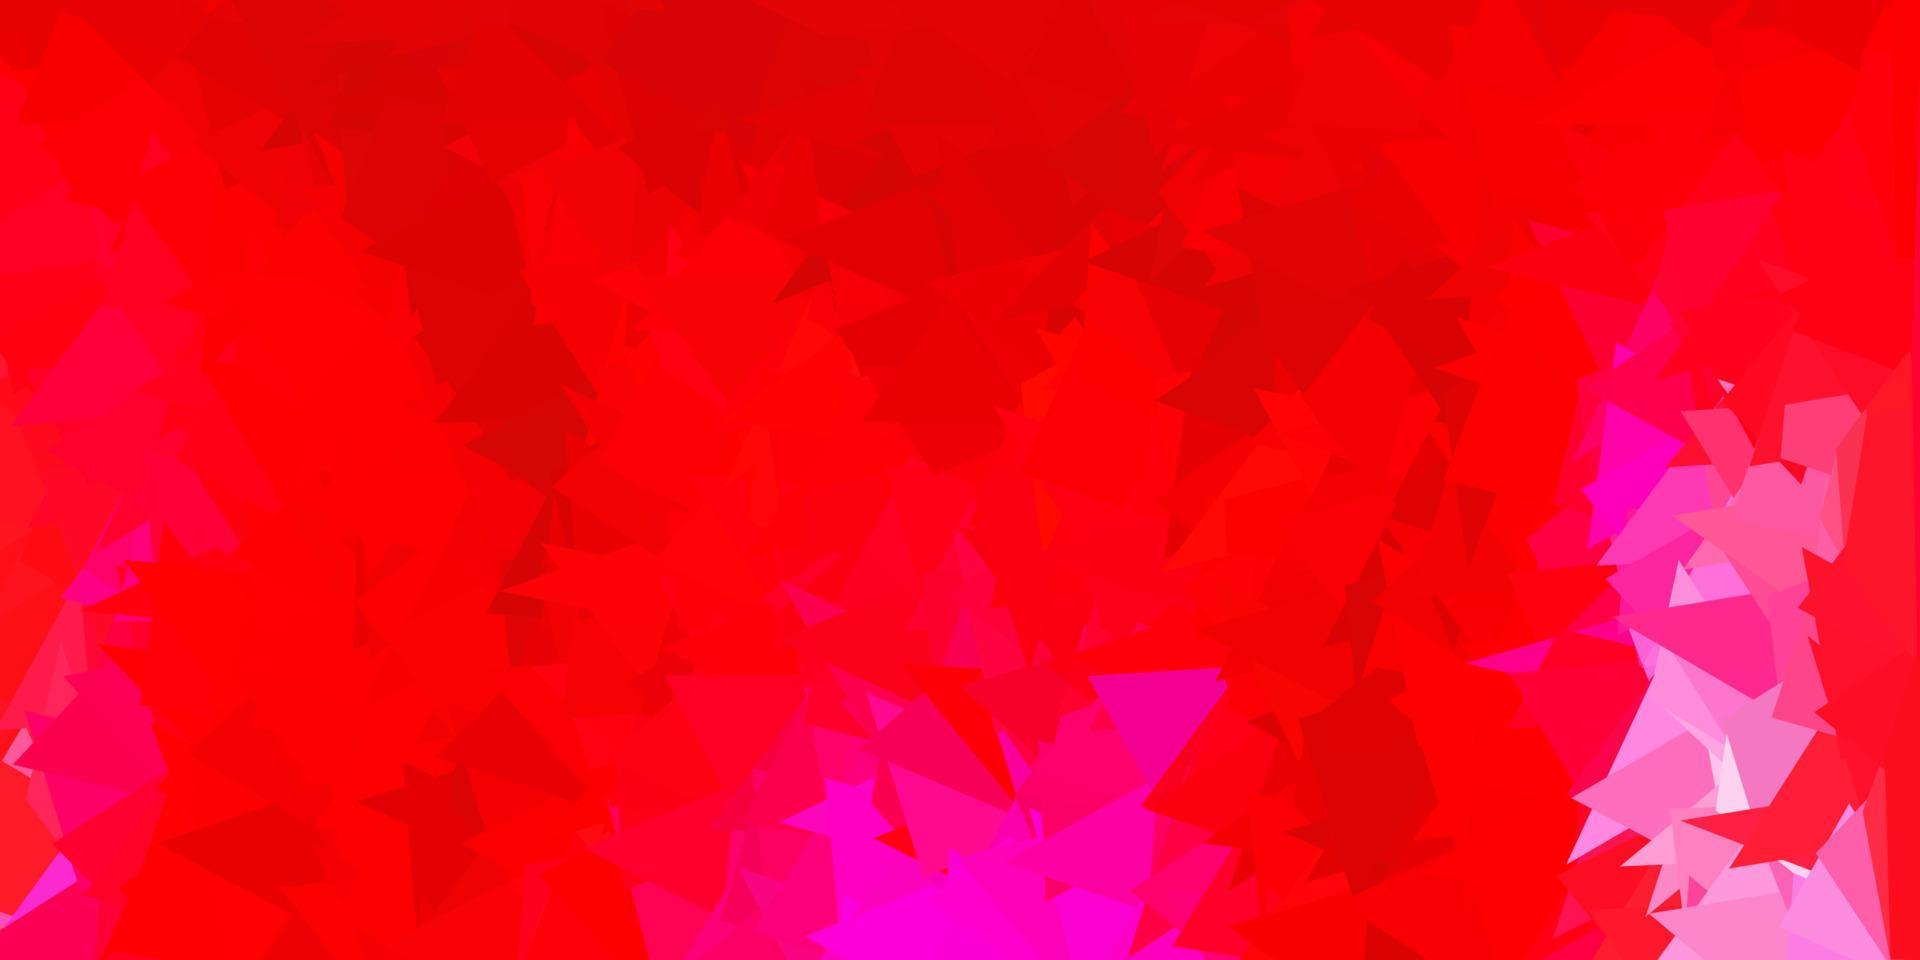 sfondo astratto triangolo vettoriale rosa scuro, rosso.